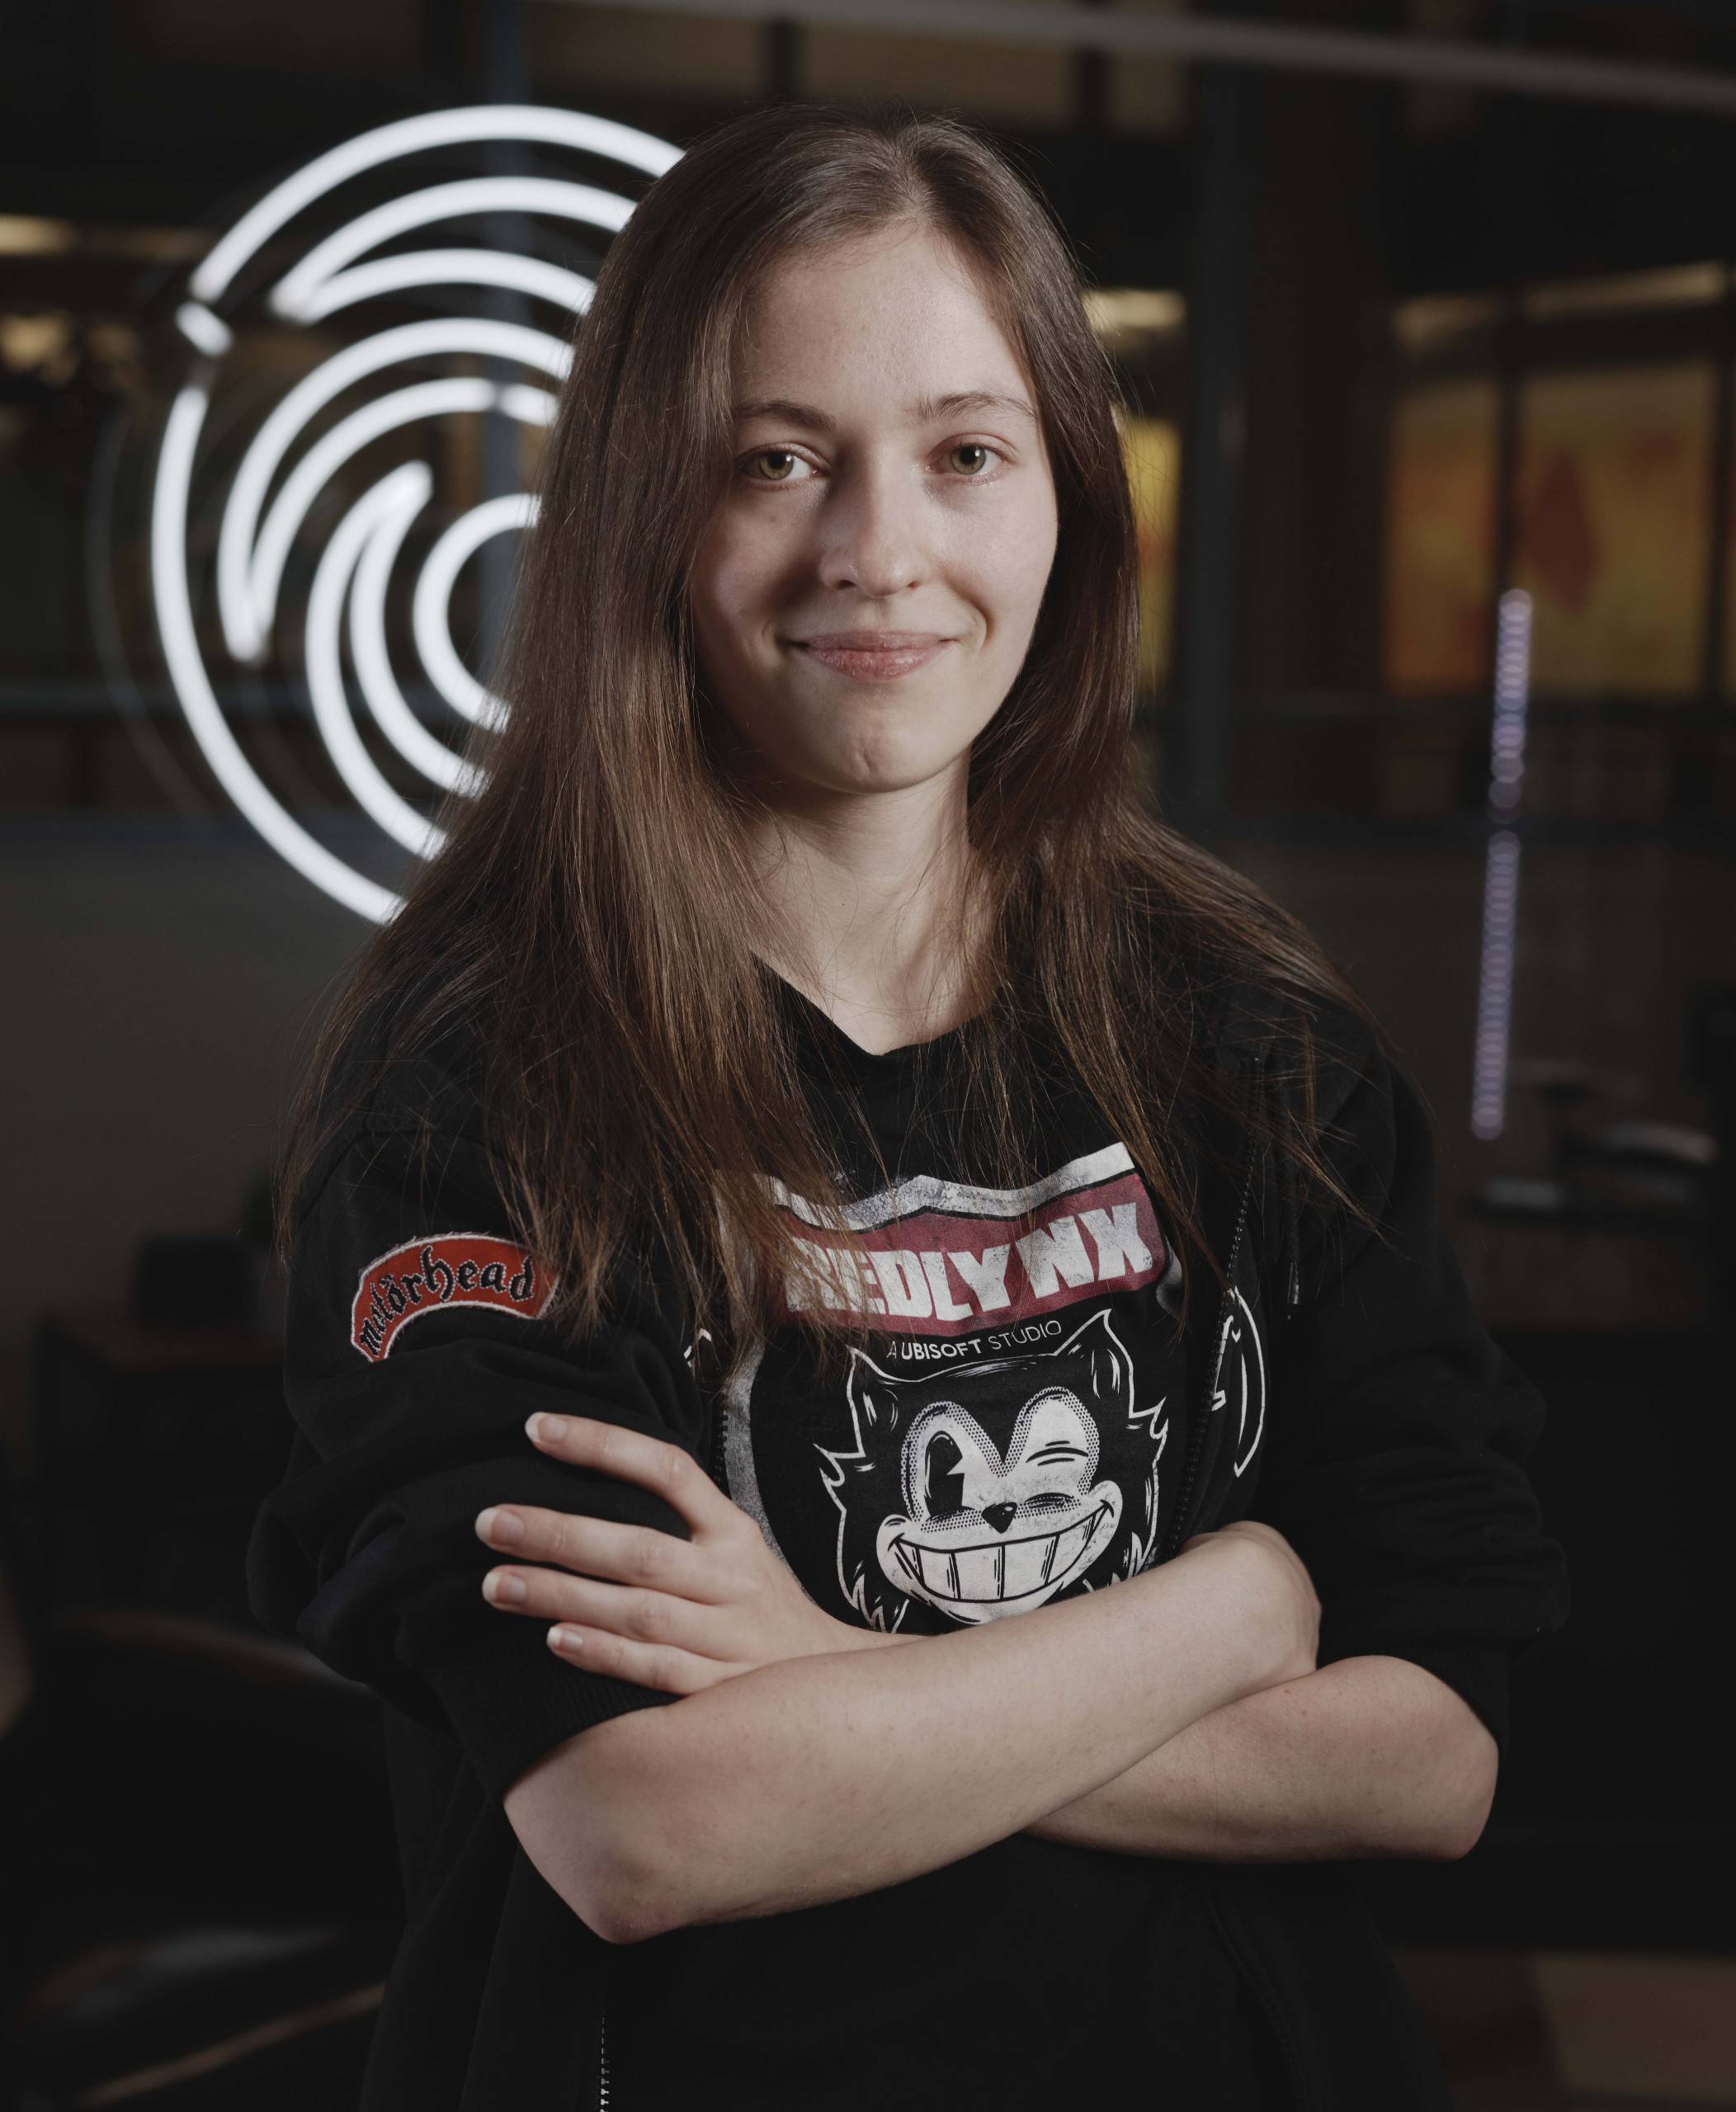 Tiina Mäkelä from Ubisoft Graduate Program looking in to the camera